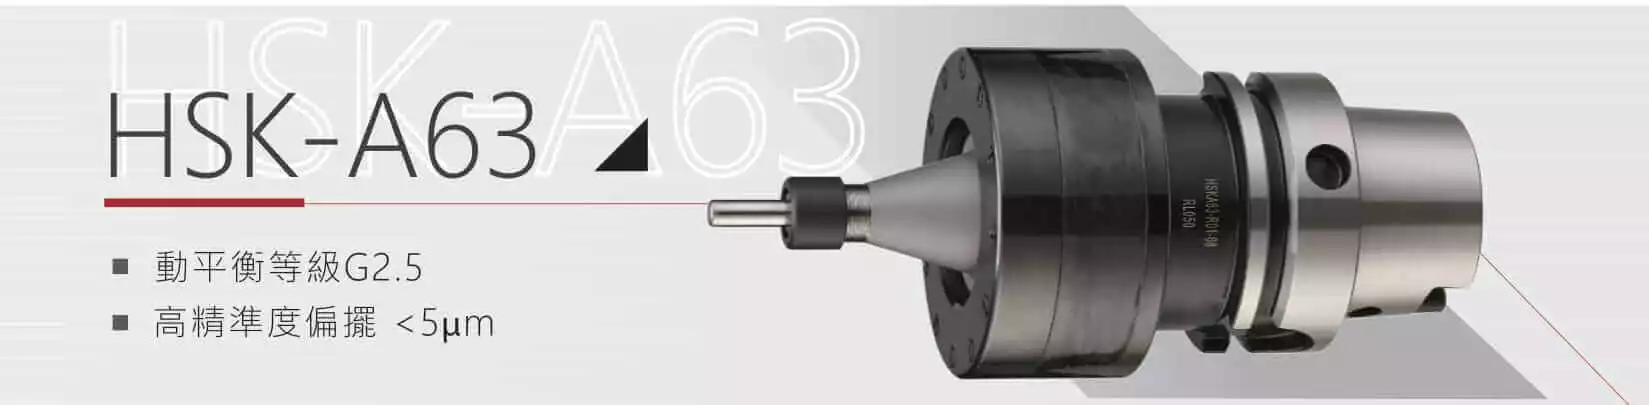 超音波刀把 HSK-A63 產品說明圖-漢鼎智慧科技